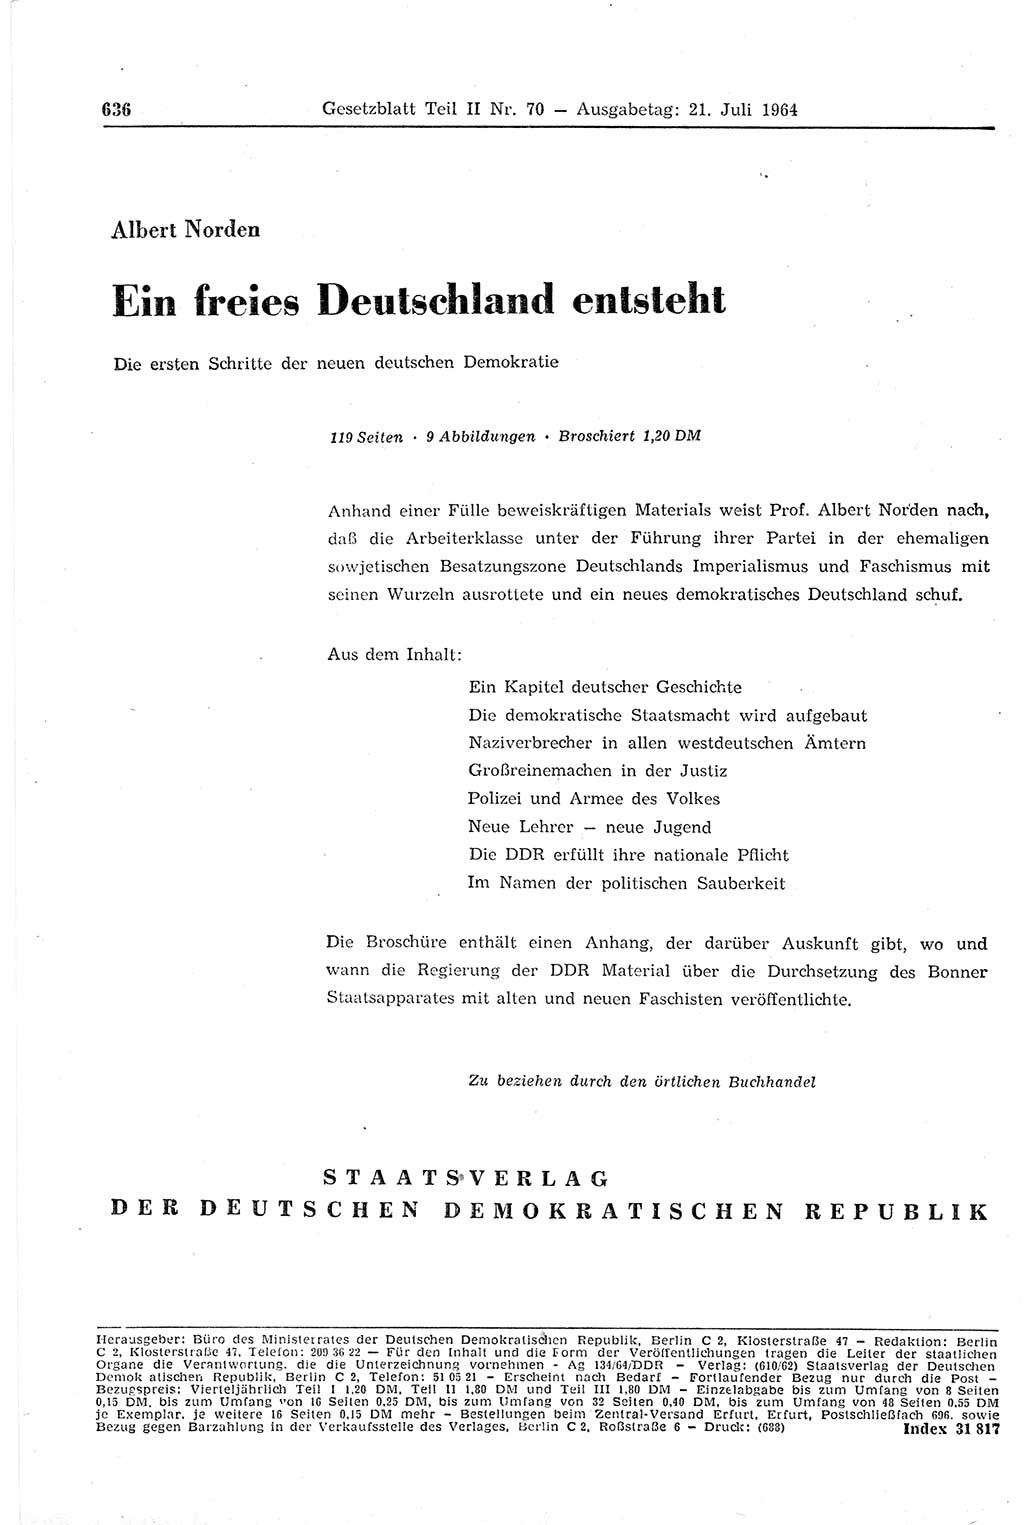 Gesetzblatt (GBl.) der Deutschen Demokratischen Republik (DDR) Teil ⅠⅠ 1964, Seite 636 (GBl. DDR ⅠⅠ 1964, S. 636)